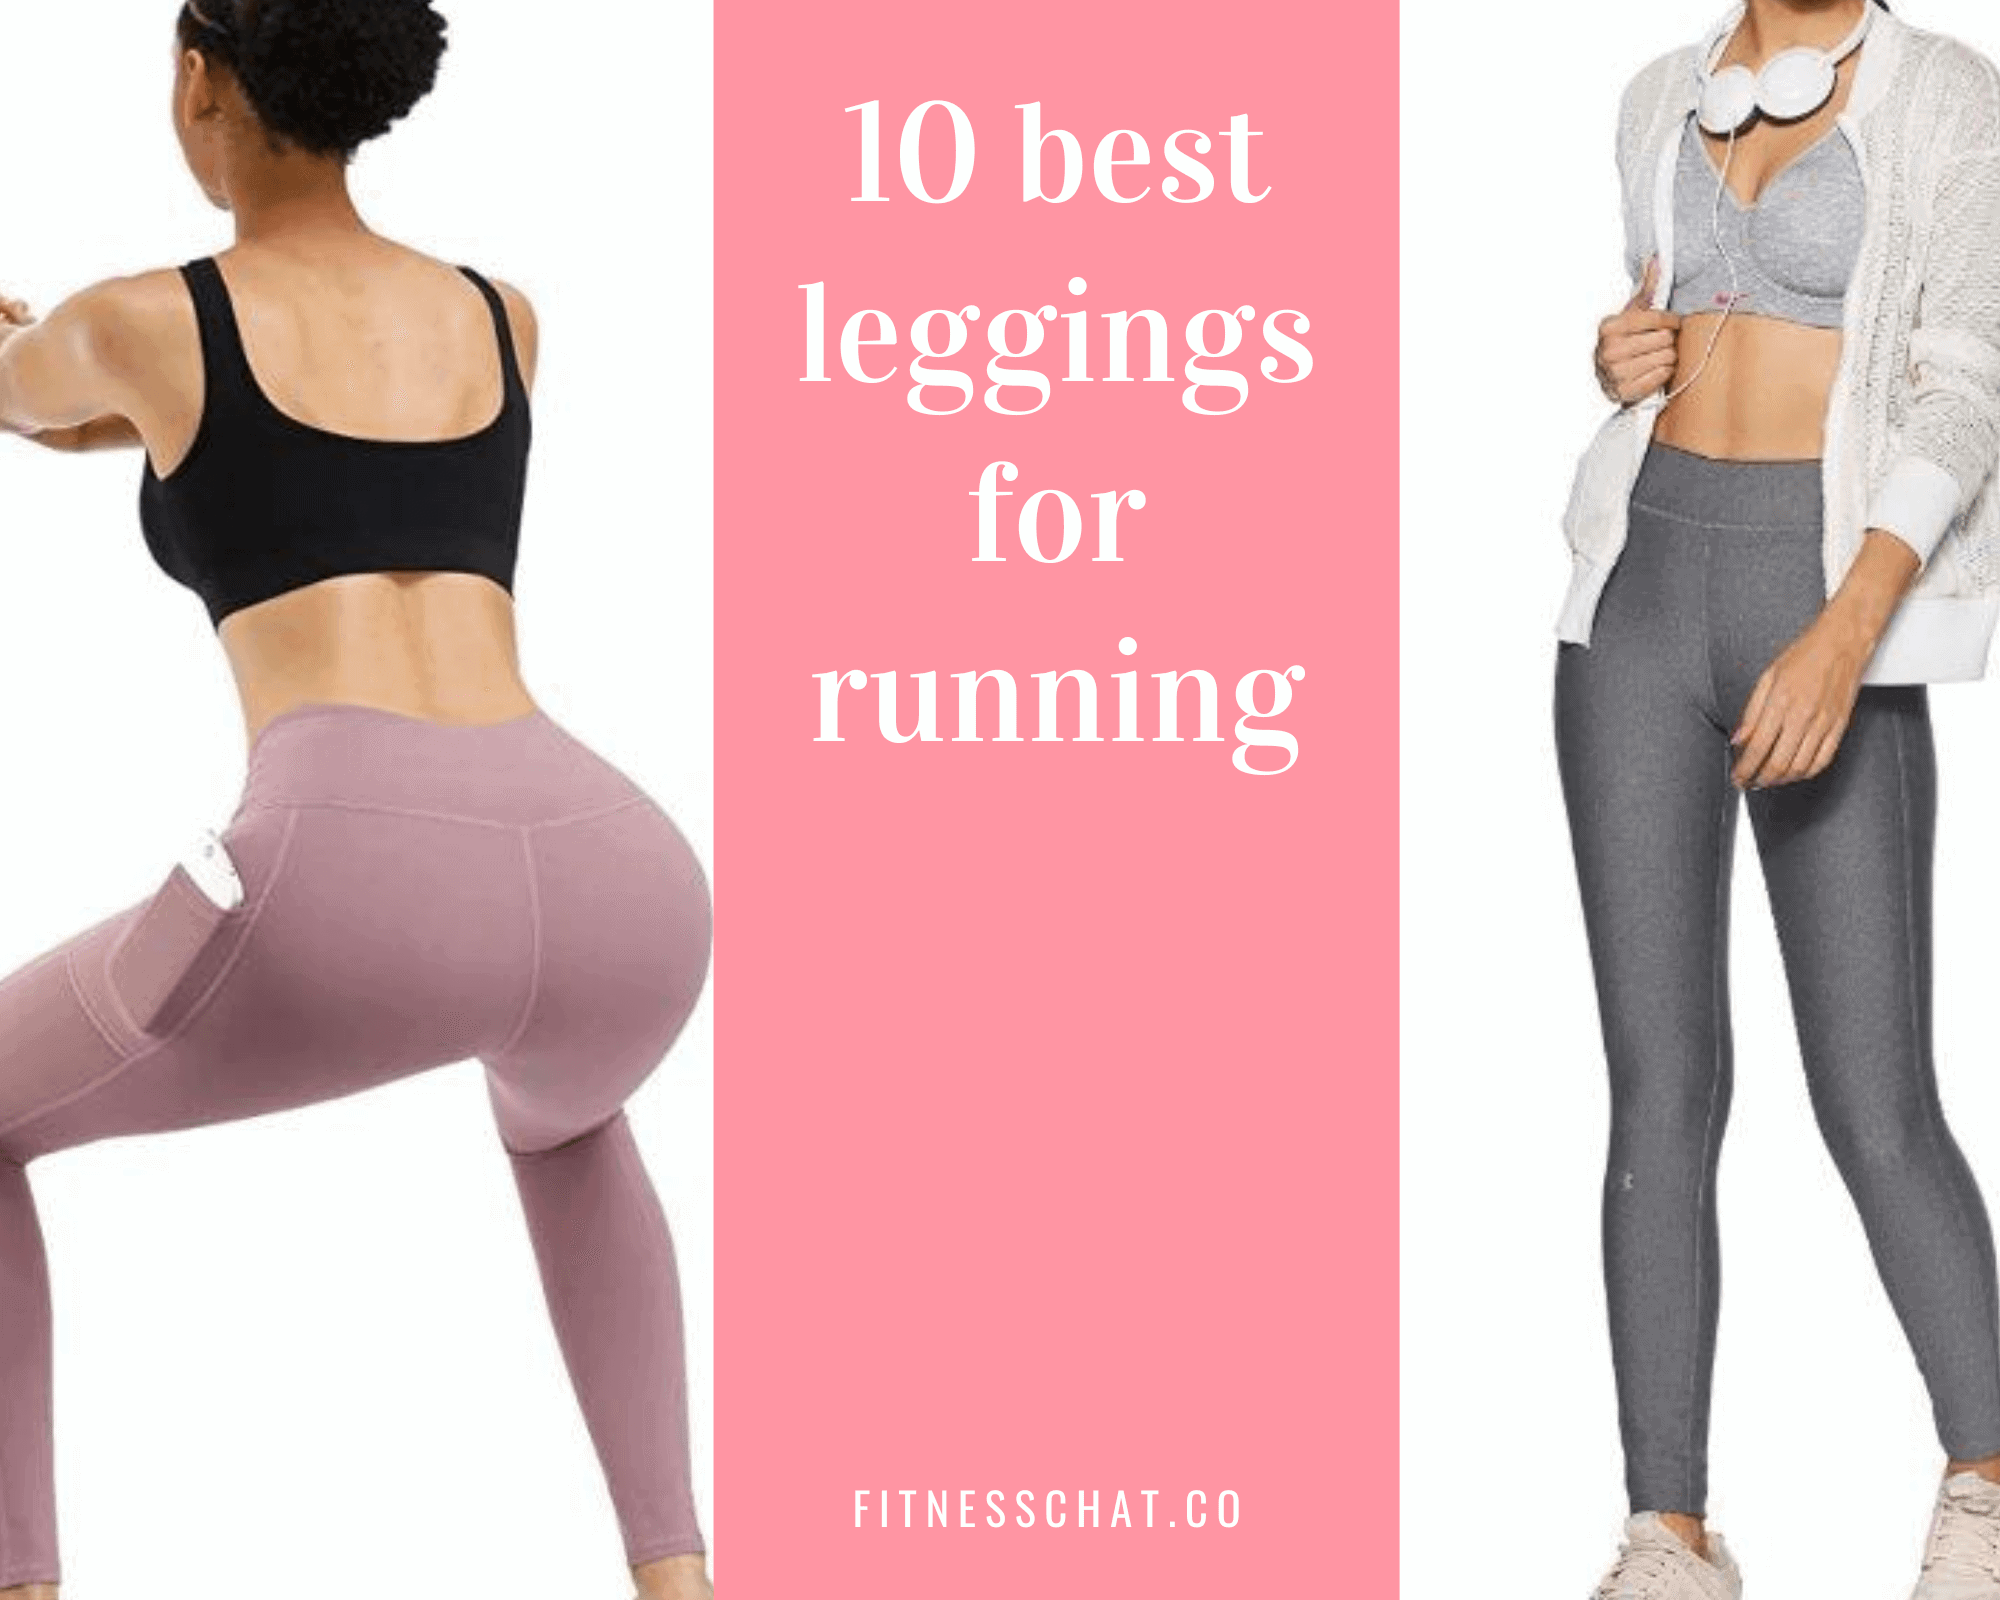 10 best running leggings that don't fall down